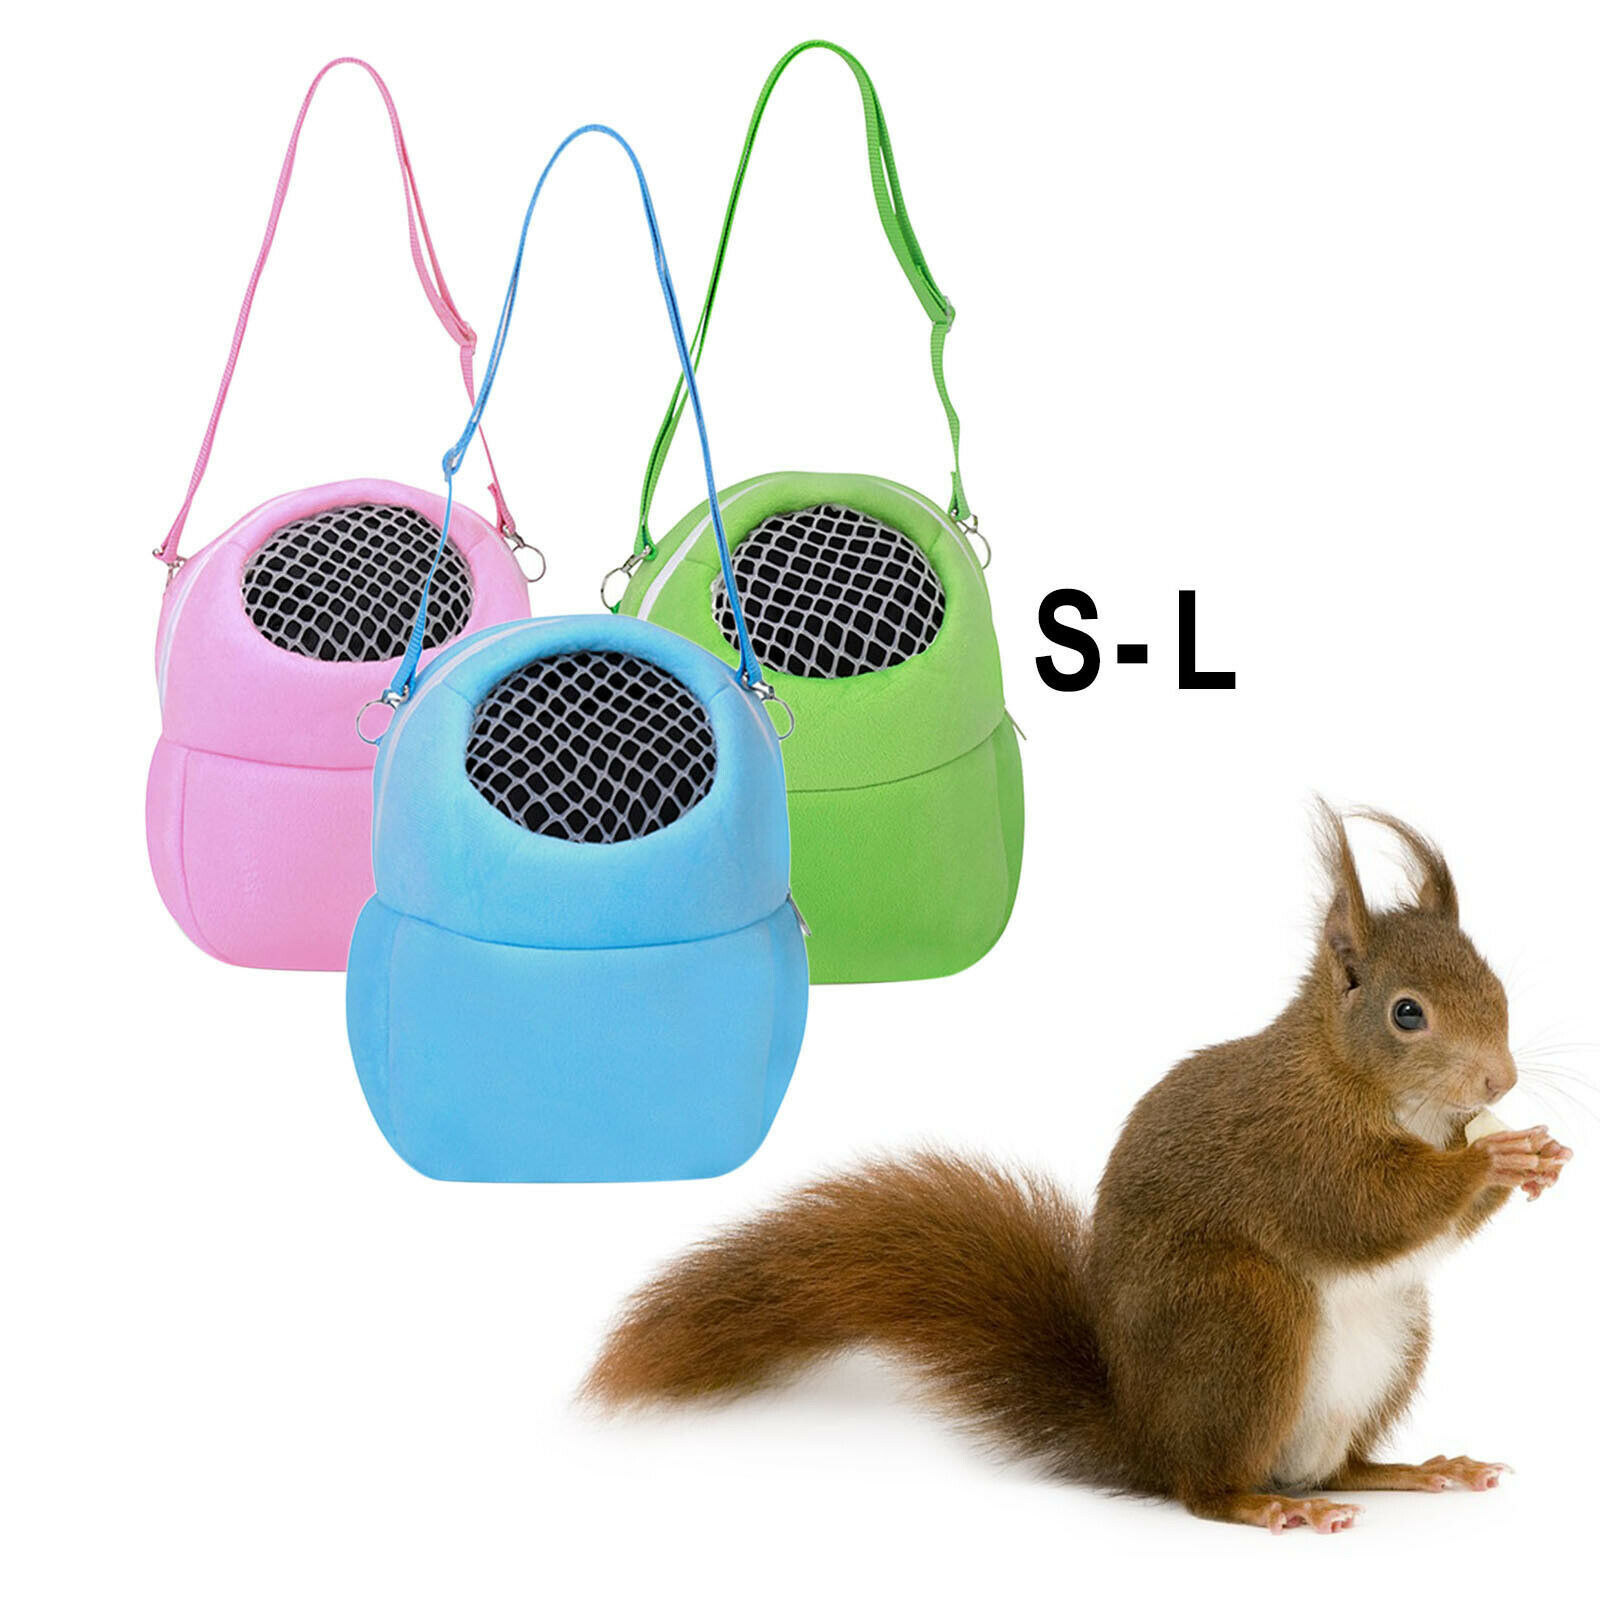 Travel Hamster Carrier Bag Pet Breathable Hedgehog Sugar Glider Guinea Pig